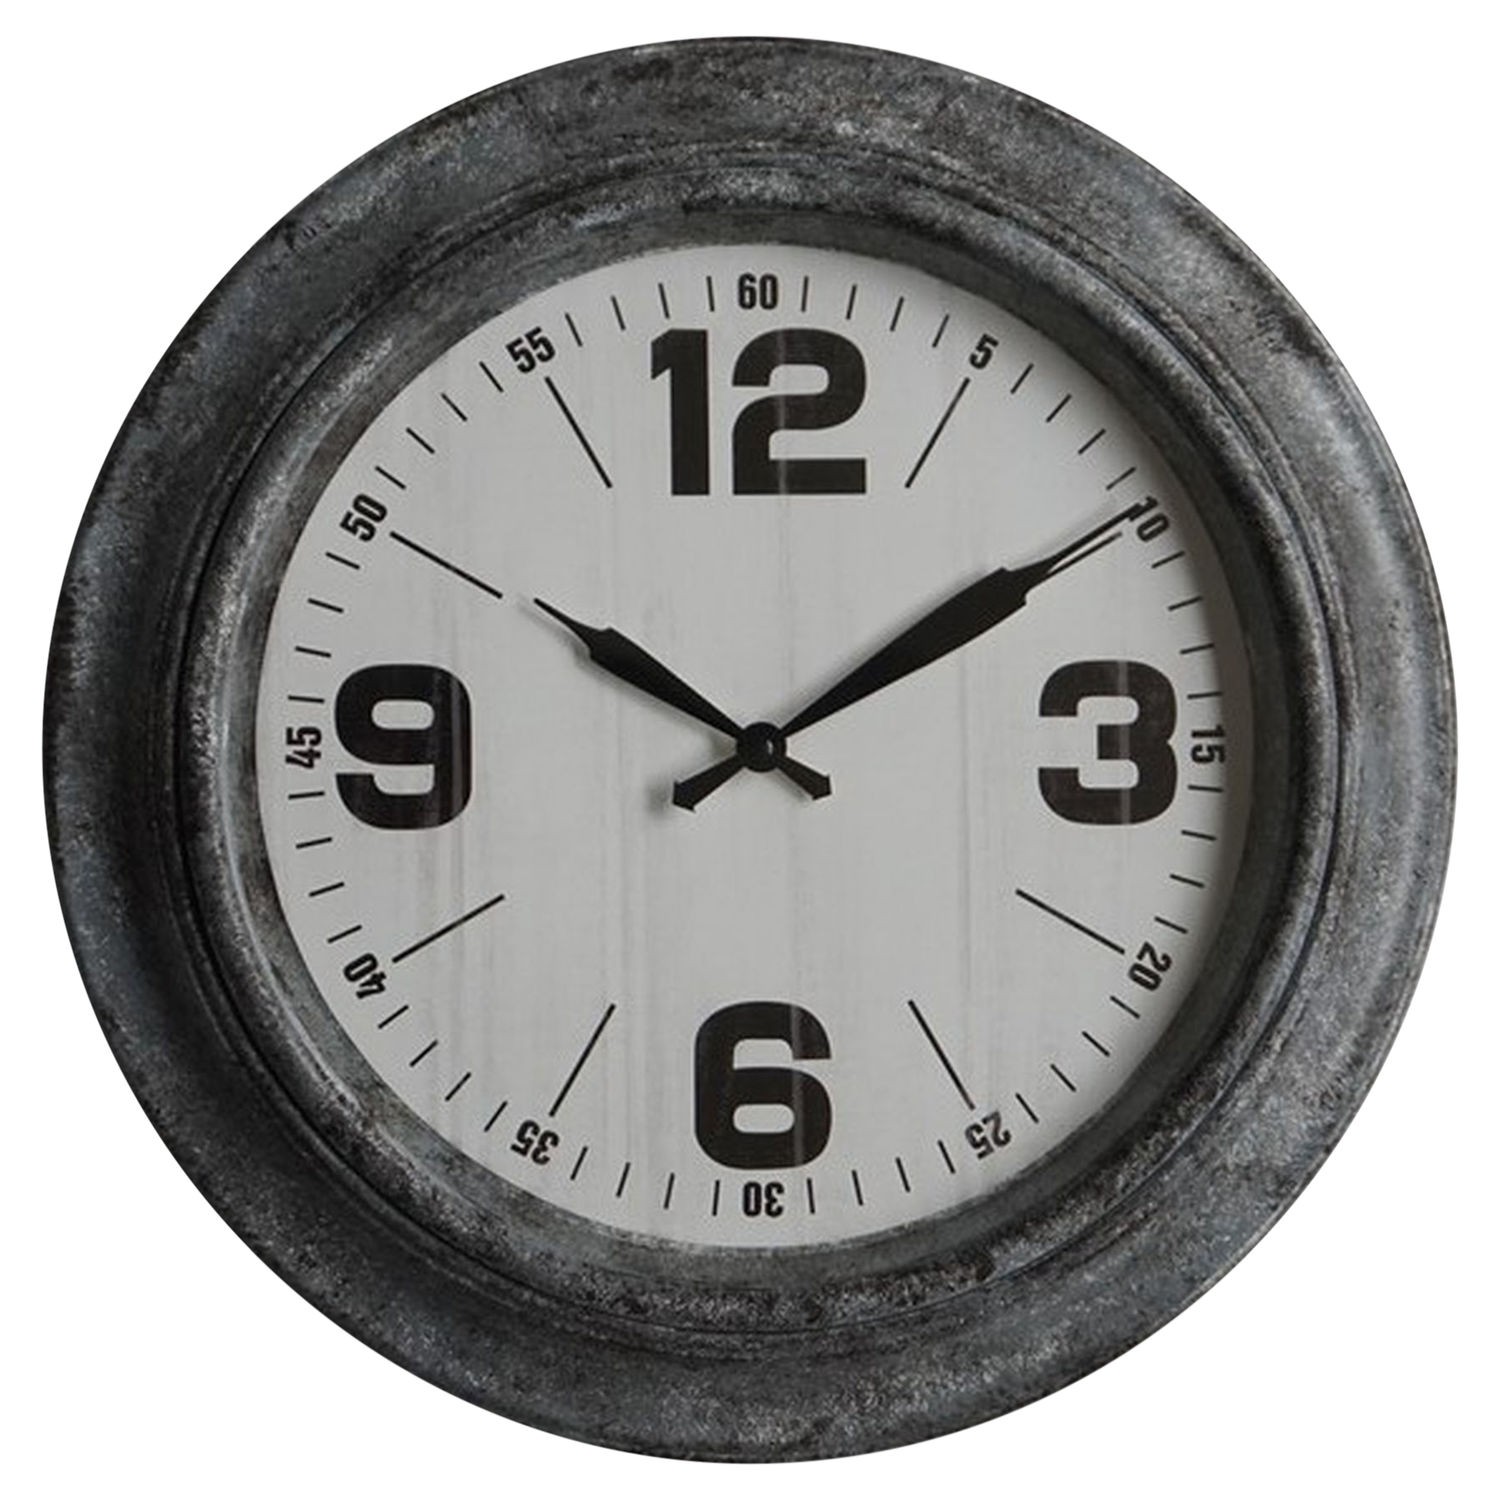 Estila Retro designové nástěnné hodiny Nomad kulatého tvaru v černé barvě 45cm